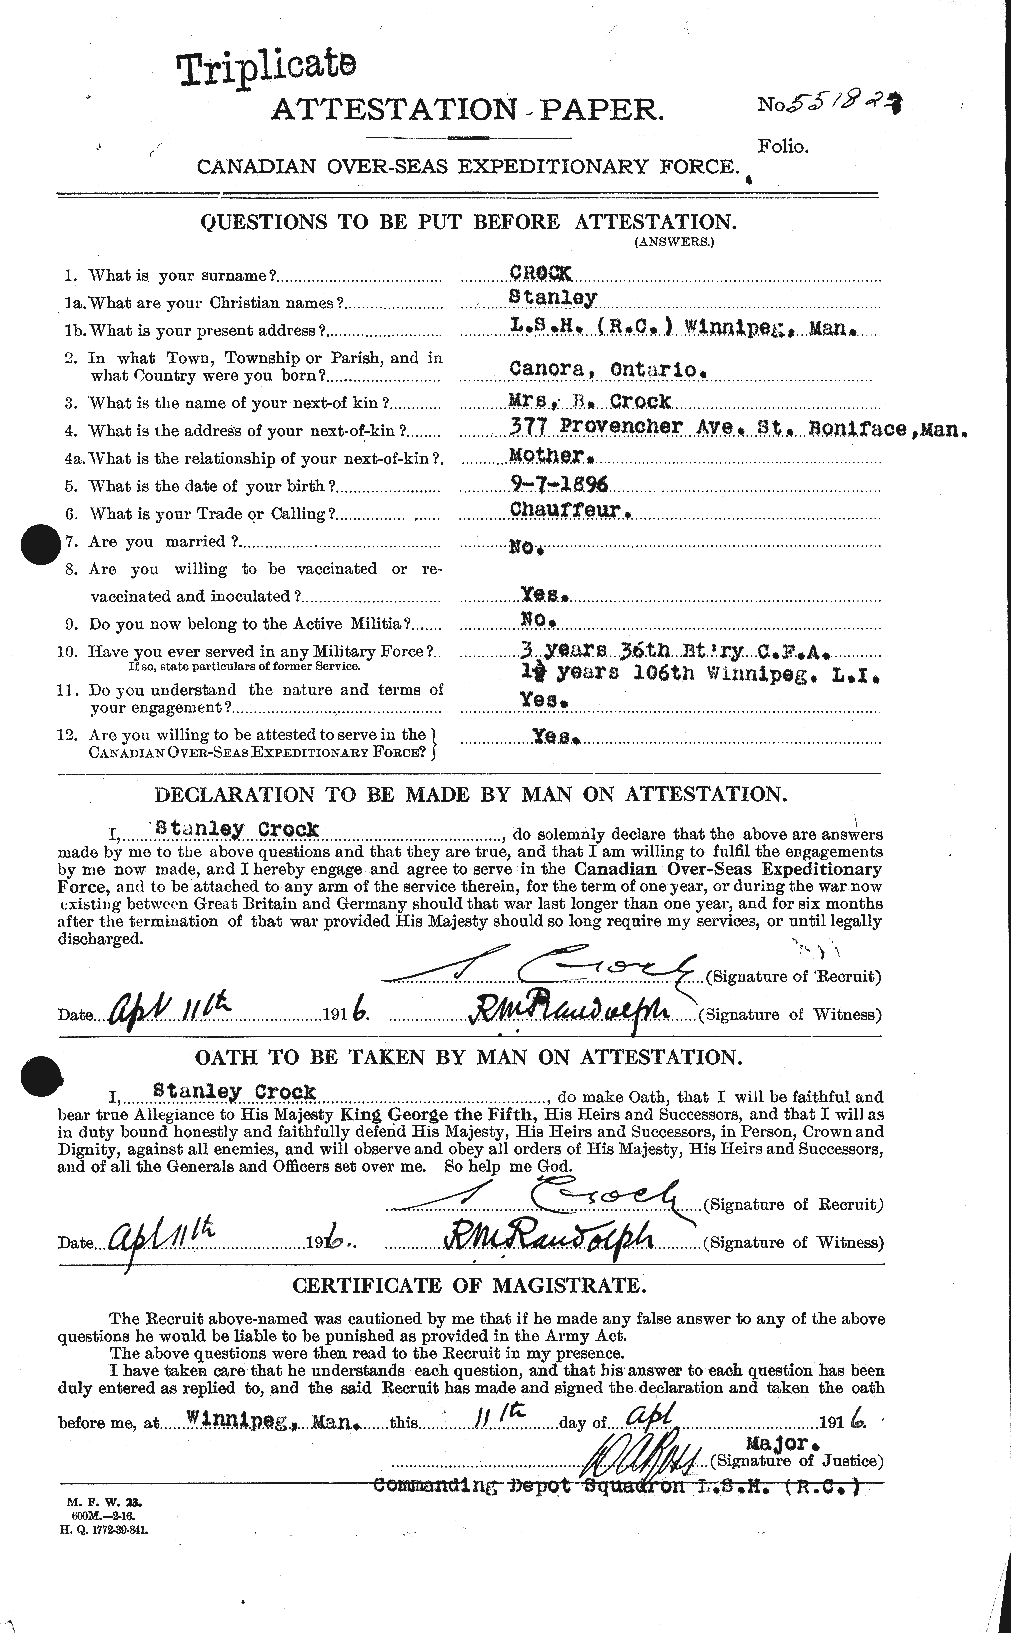 Dossiers du Personnel de la Première Guerre mondiale - CEC 064976a